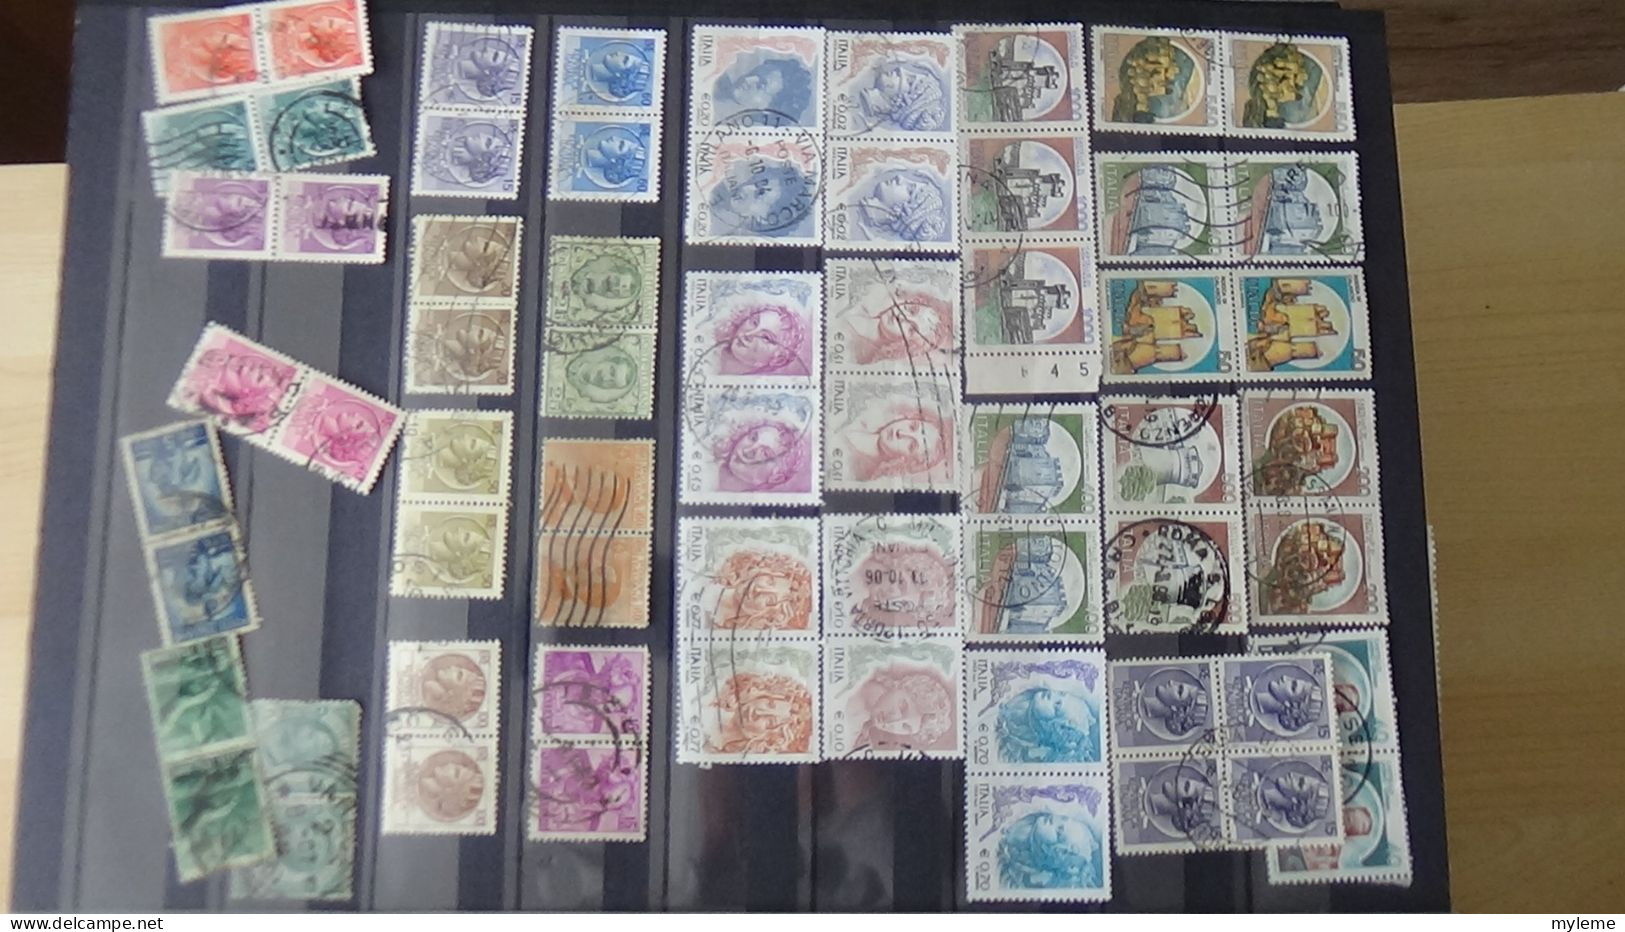 BF47 Bel ensemble de timbres de divers pays dont Italie N° 2370Aa **. Cote 1500 euros